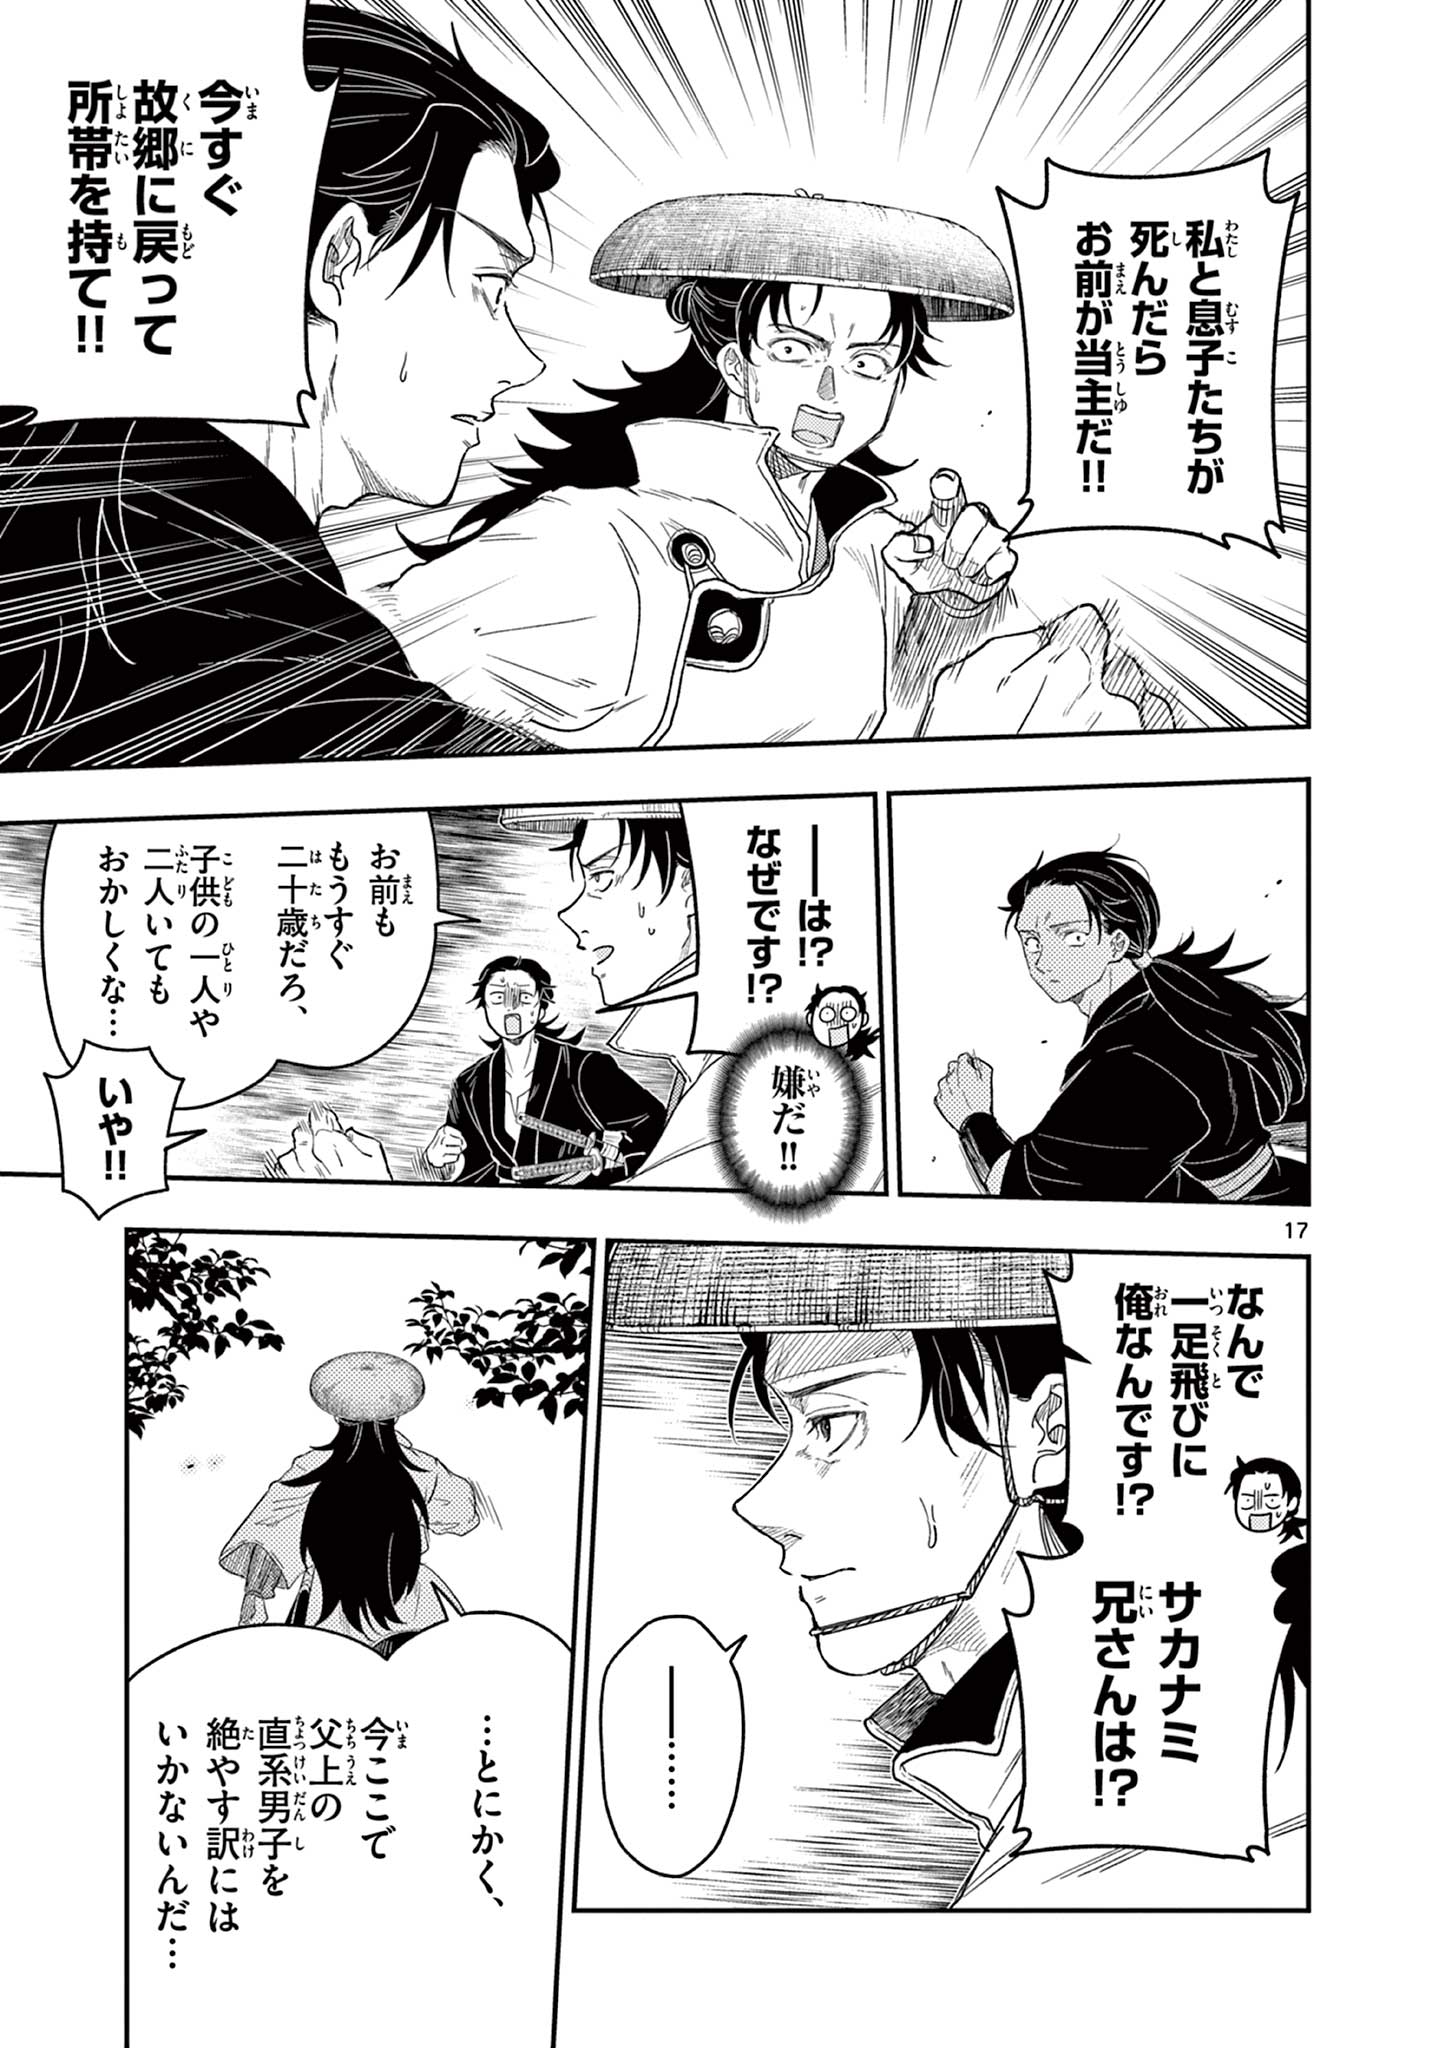 Ryuu Okuri no Isagi  - Chapter 18 - Page 17